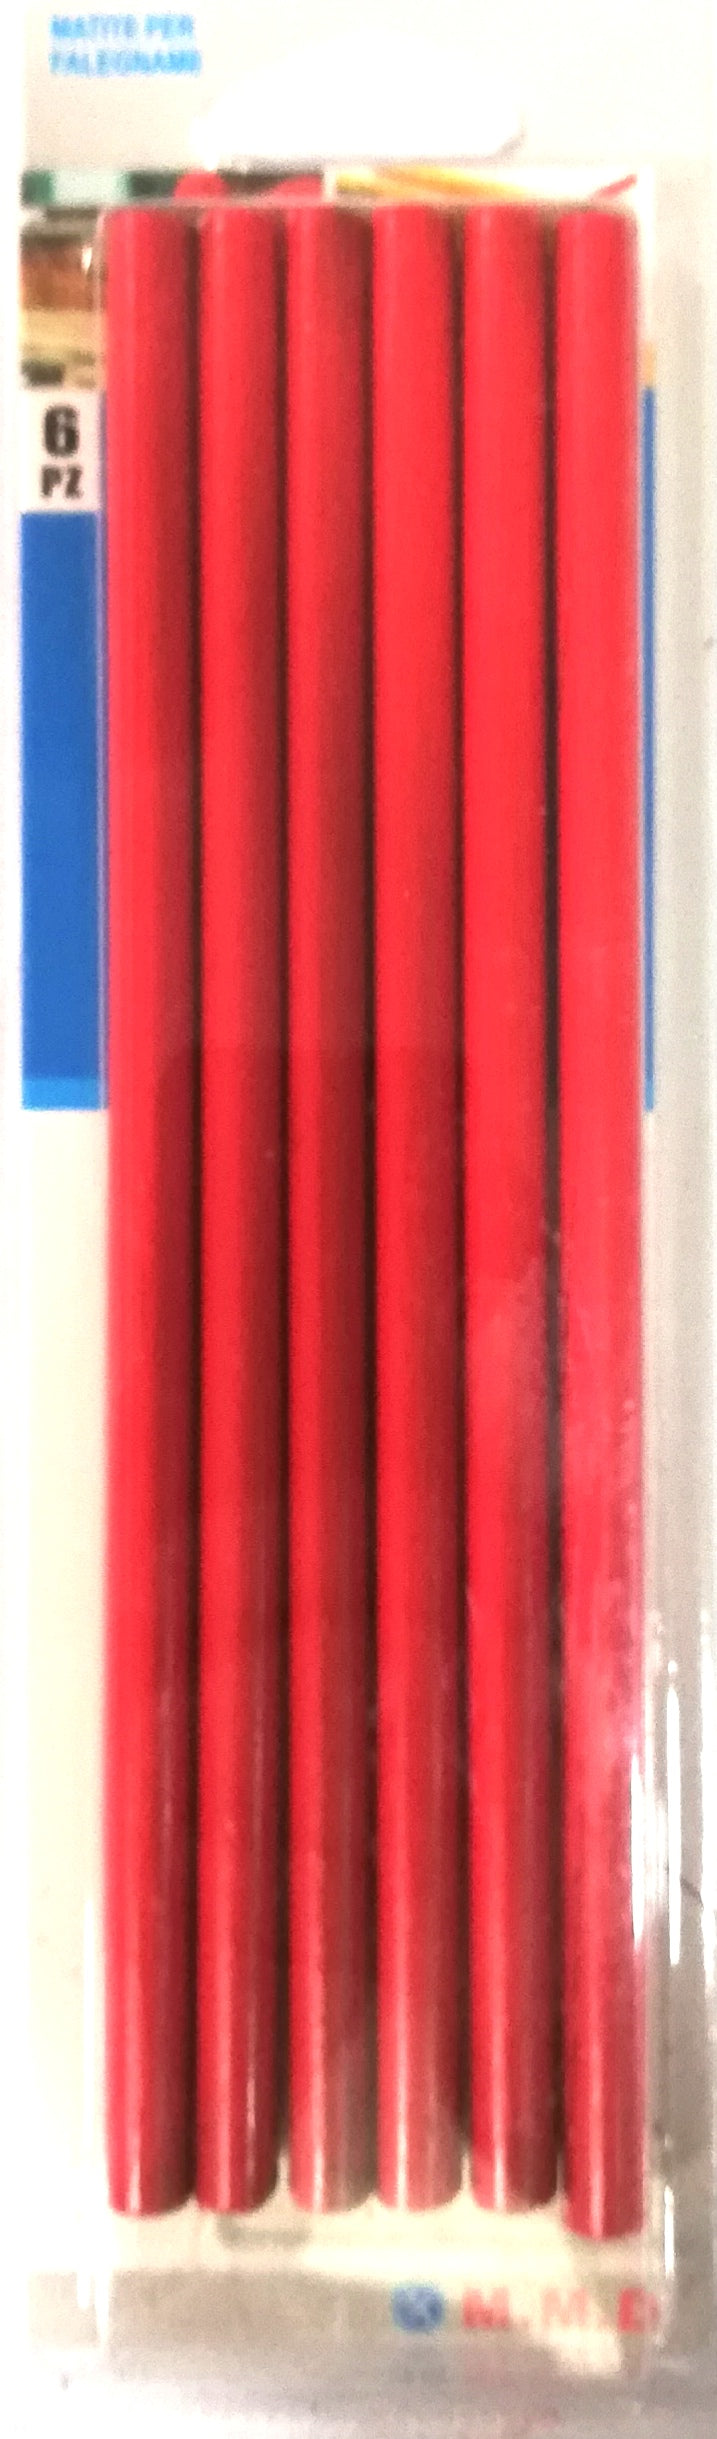 matite per falegname 6pz (4452521279555)